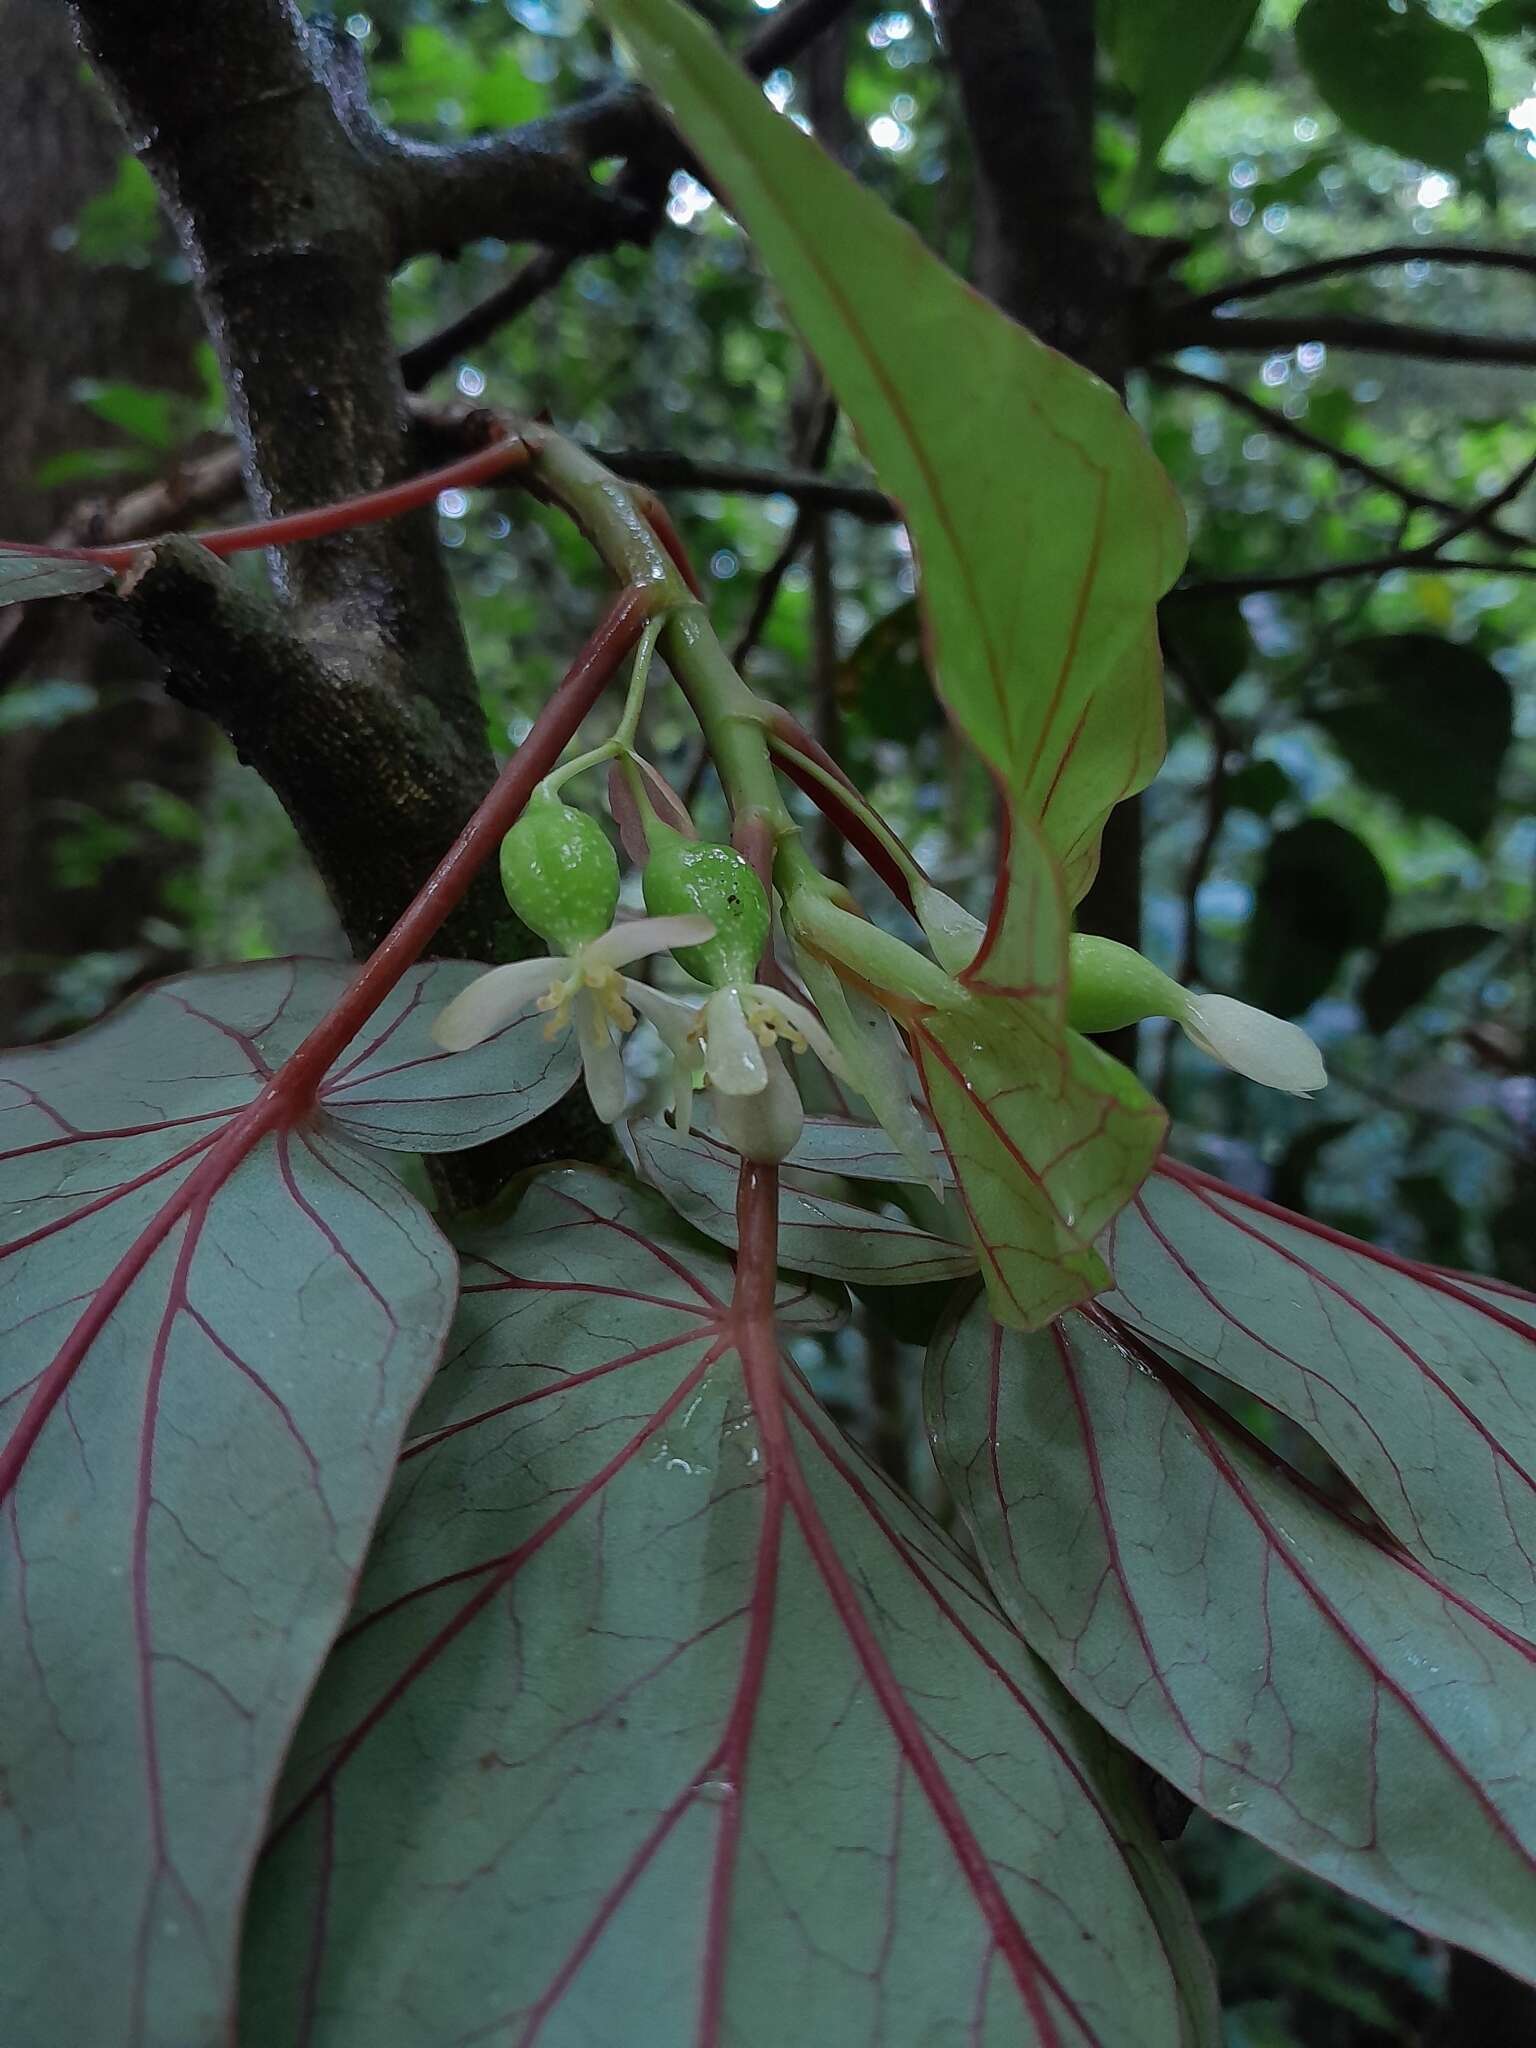 Image of Begonia humbertii Keraudren